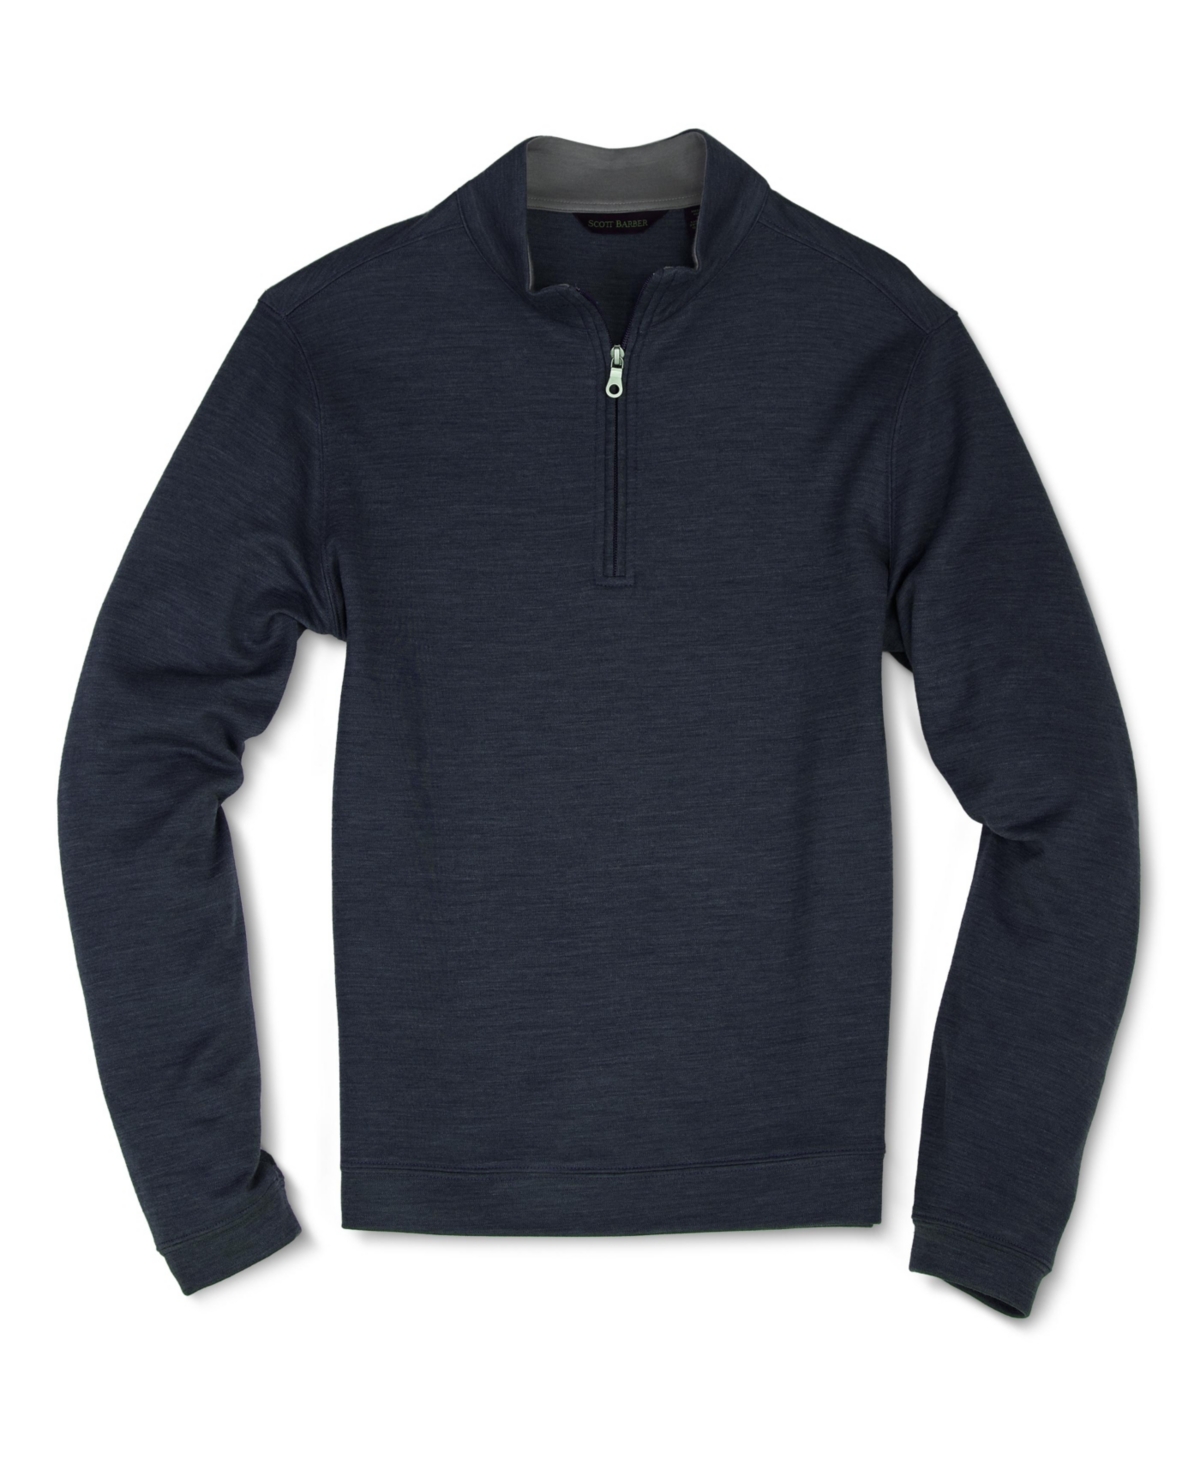 Men's Wool Blend Zip Mock Sweatshirt - Midnight